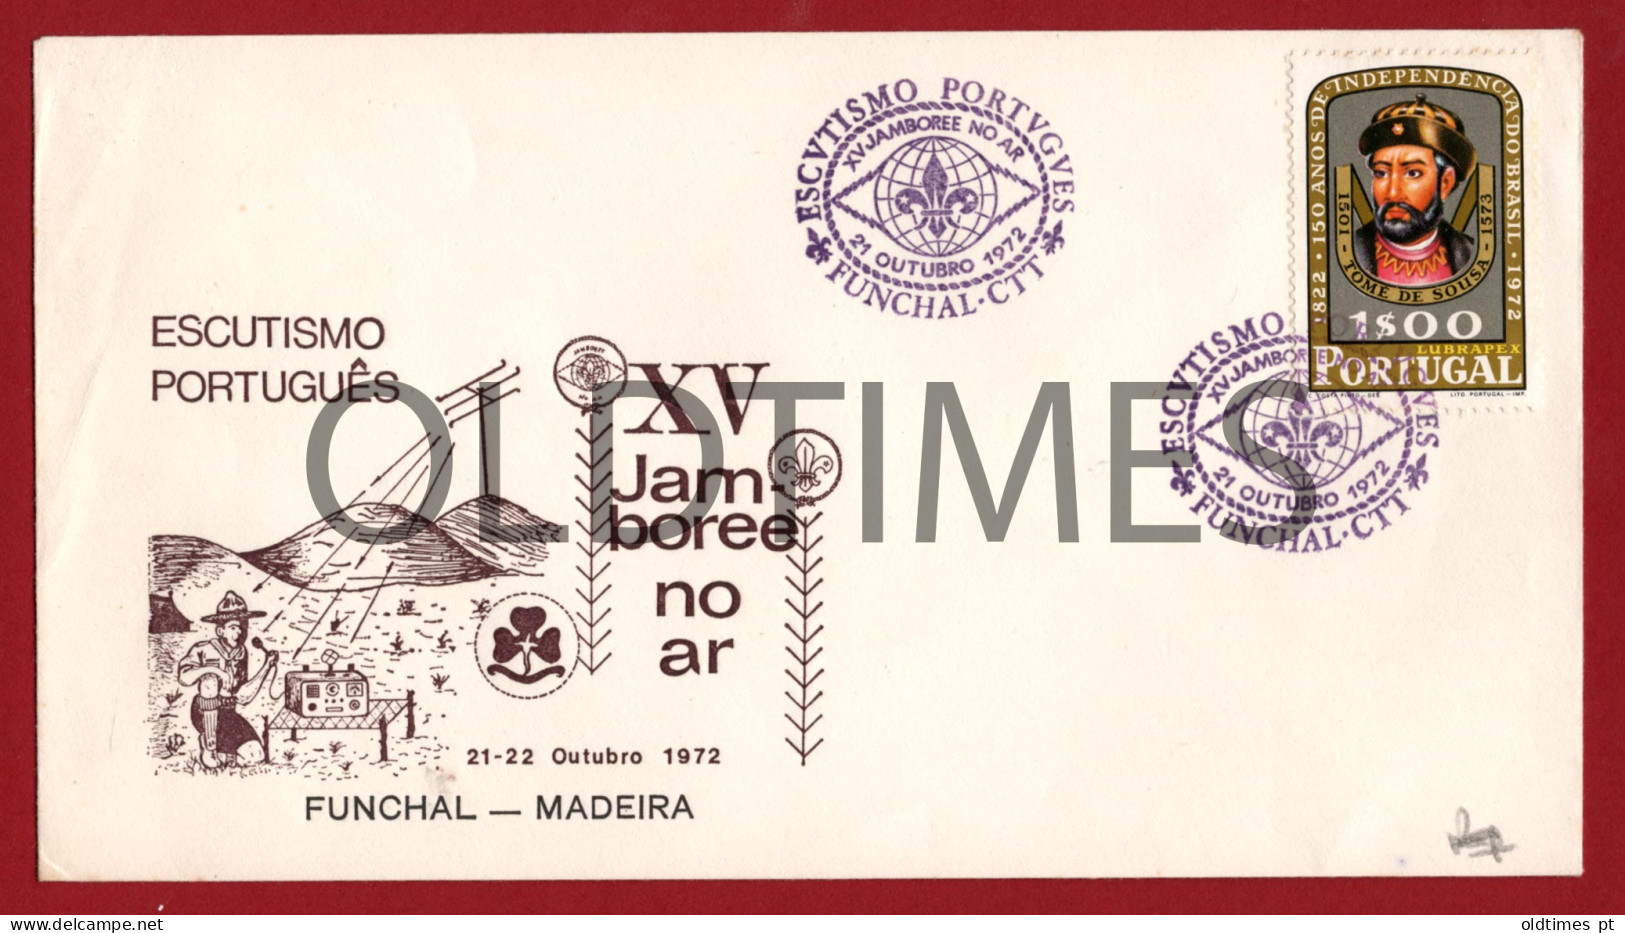 PORTUGAL - MADEIRA - FUNCHAL - ESCUTISMO PORTUGUES - XV JAMBOREE NO AR - ESCOTEIROS - 1972 ENVELOPE - Scoutisme